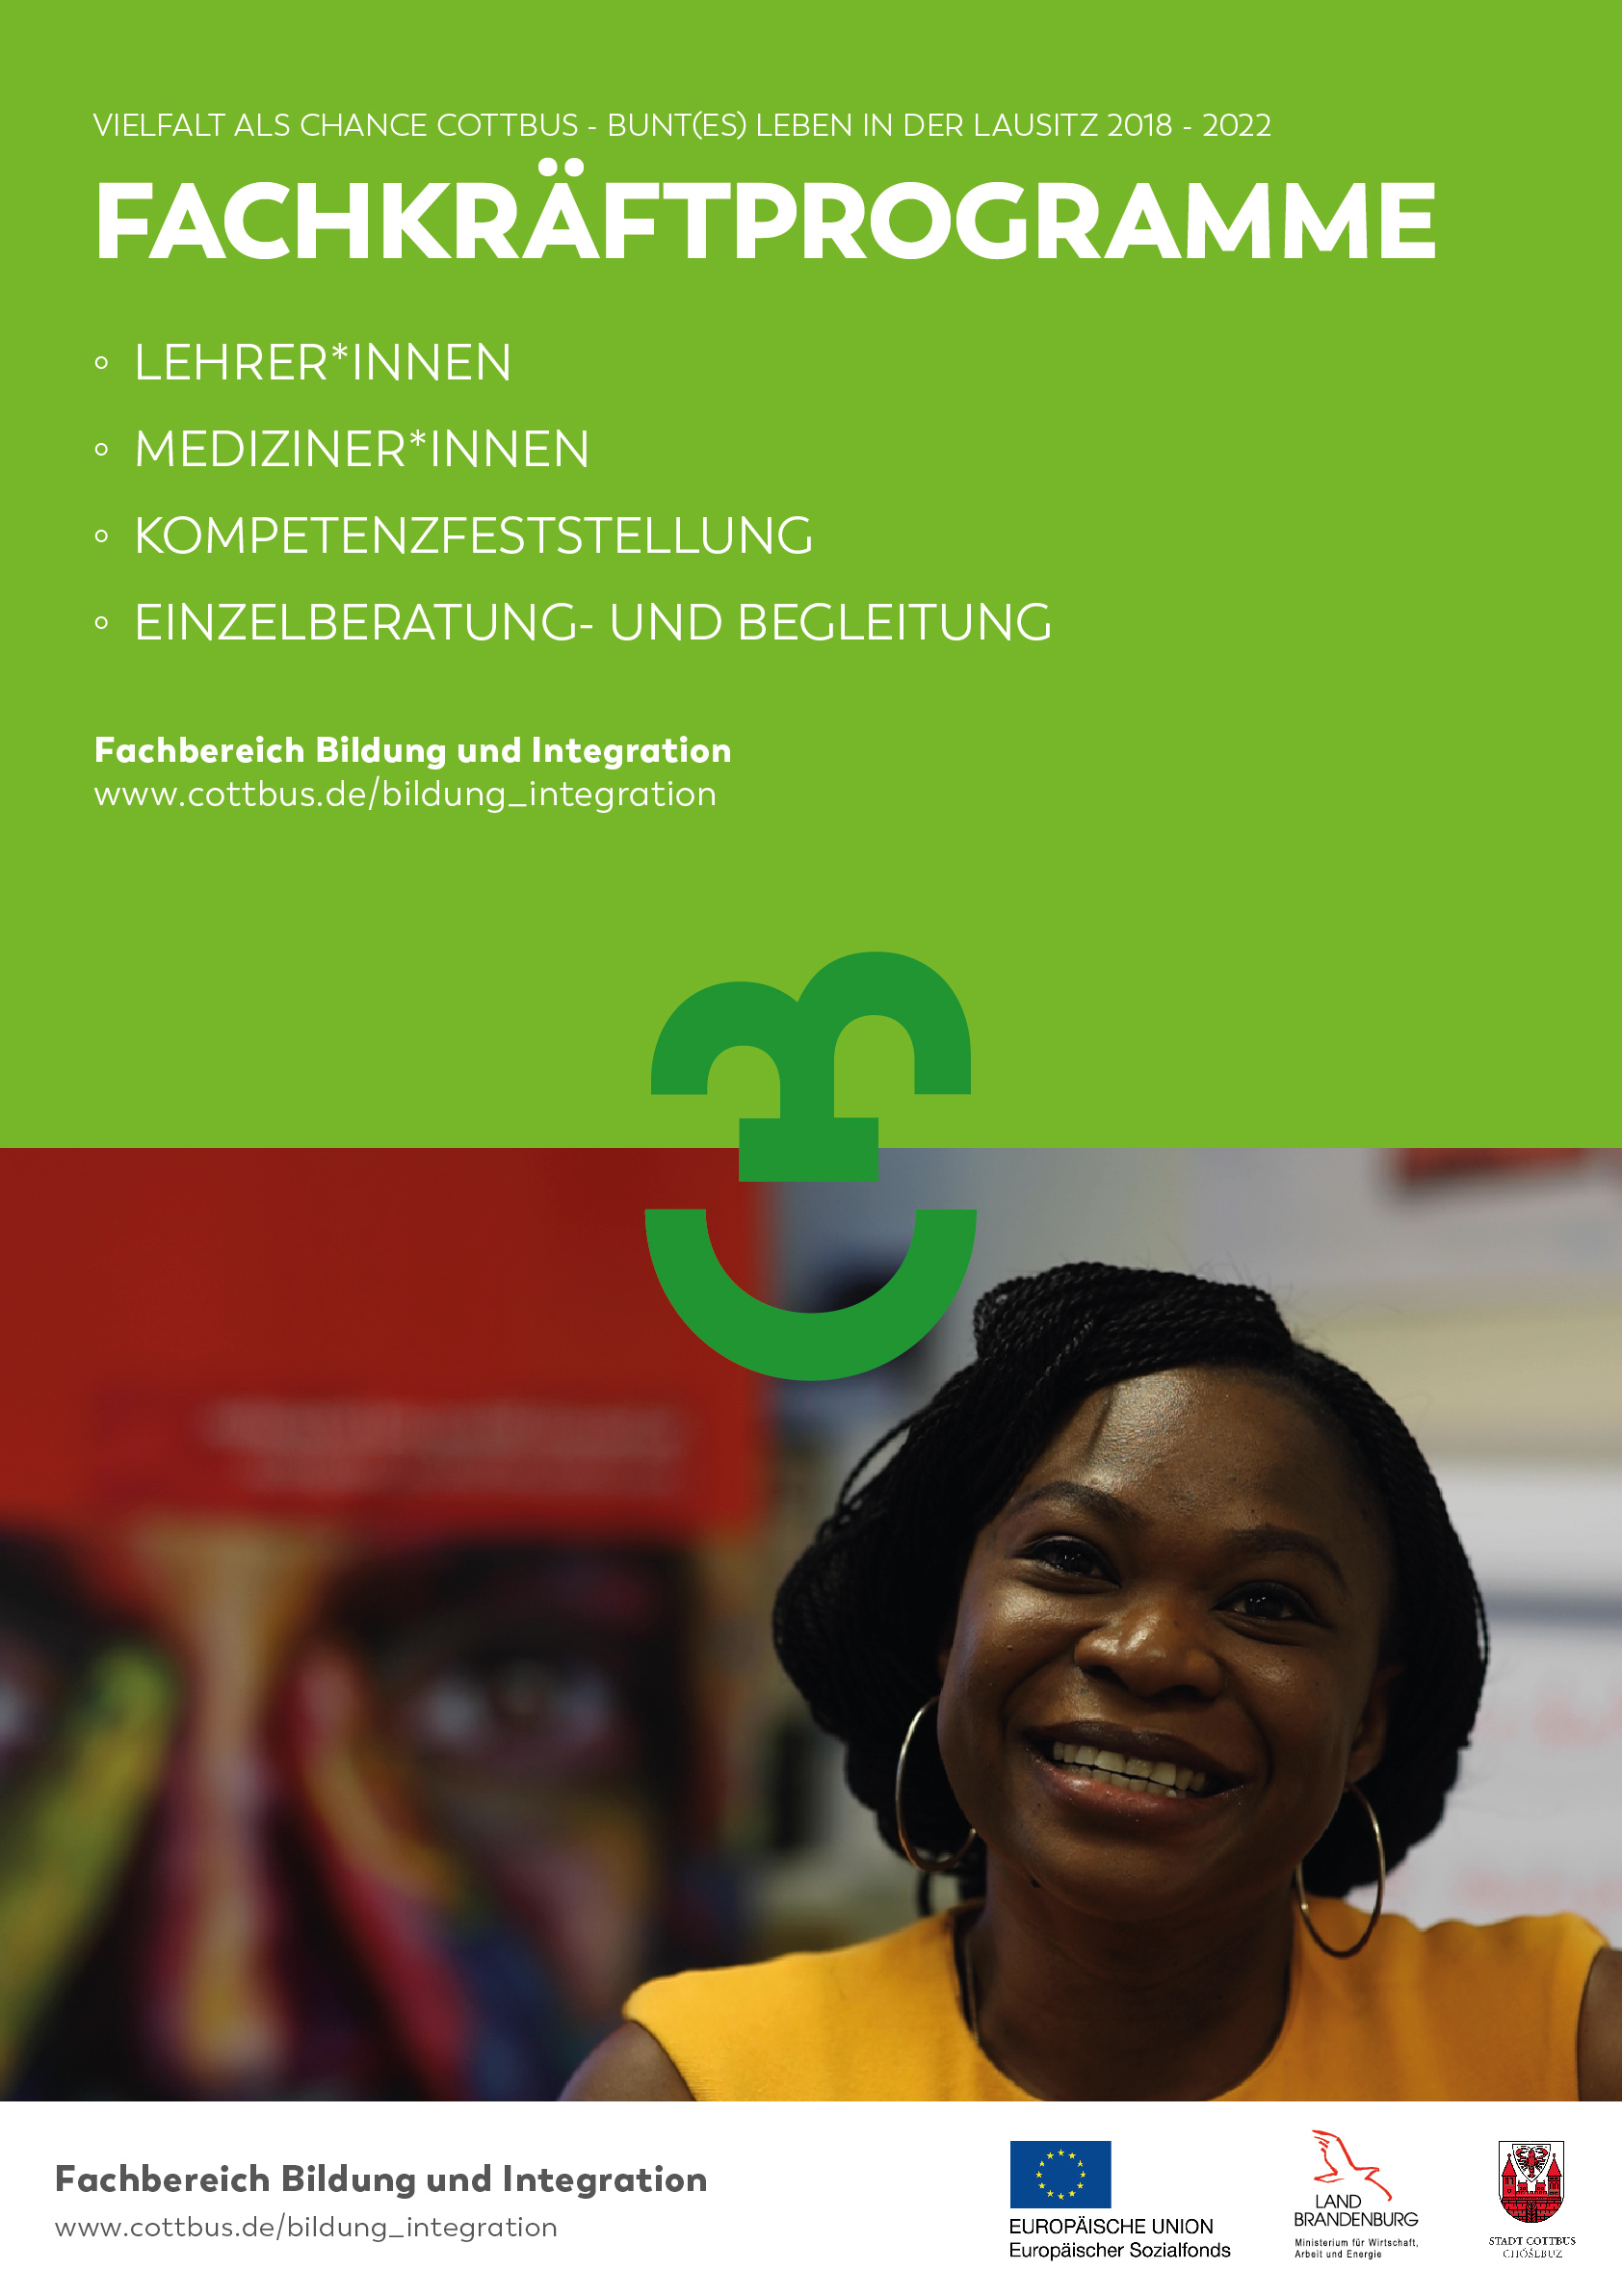 Plakat zeigt eine lachende, dunkelhäutige Frau. Auf einer grün unterlegten Fläche darüber sind die Angebote zusammengefasst, die das SUW-Projekt Cottbus hinsichtlich Fachkräfteprogrammen bietet.